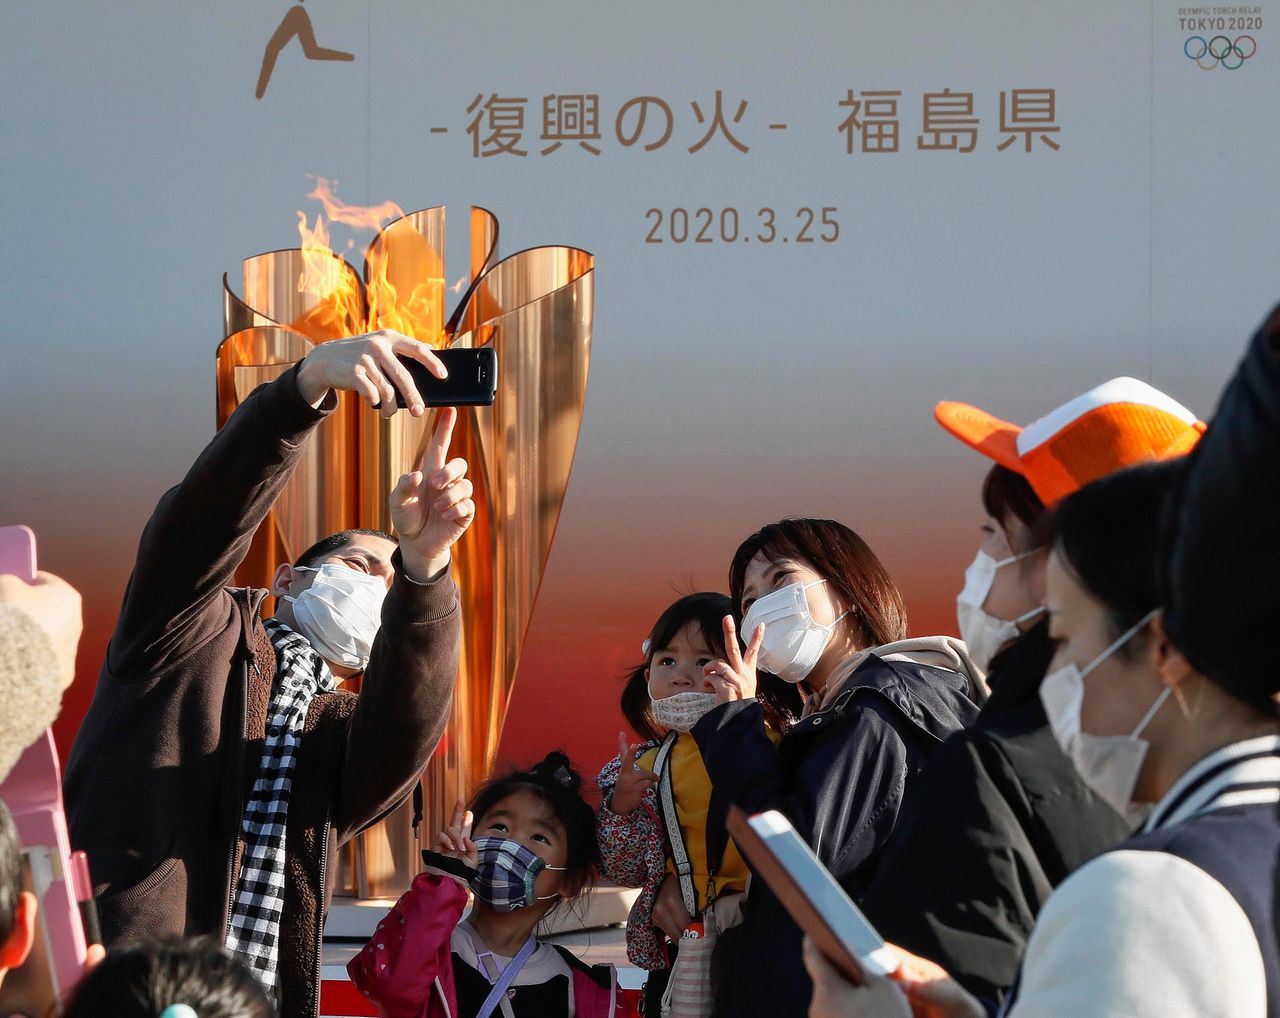 De olympische vlam wordt getoond in Fukushima nadat het IOC de Spelen van 2020 officieel heeft uitgesteld.